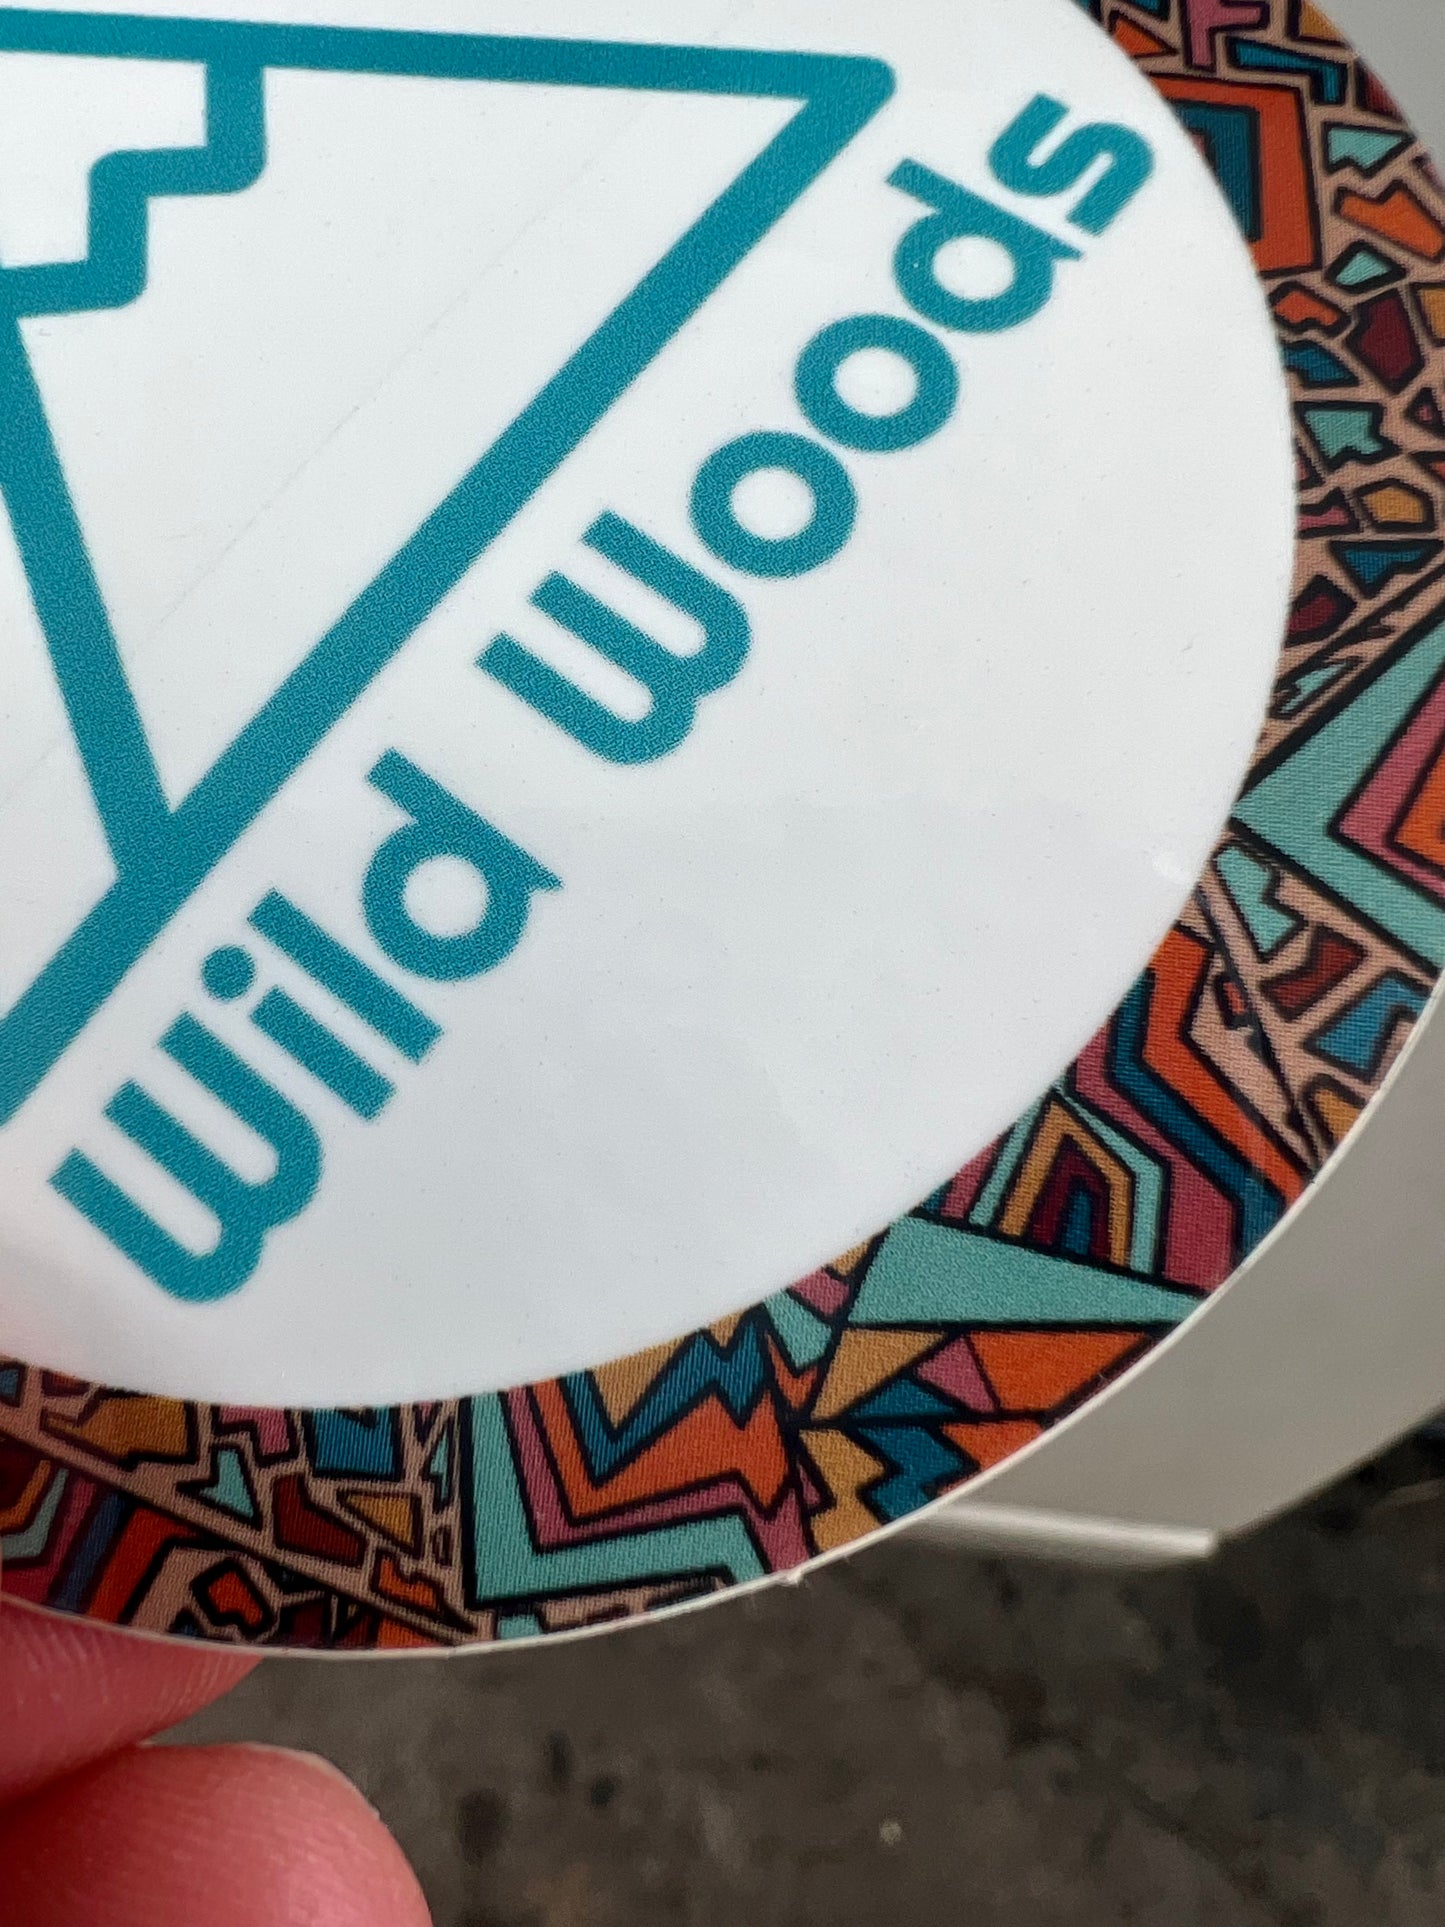 3" Wild Woods Sticker